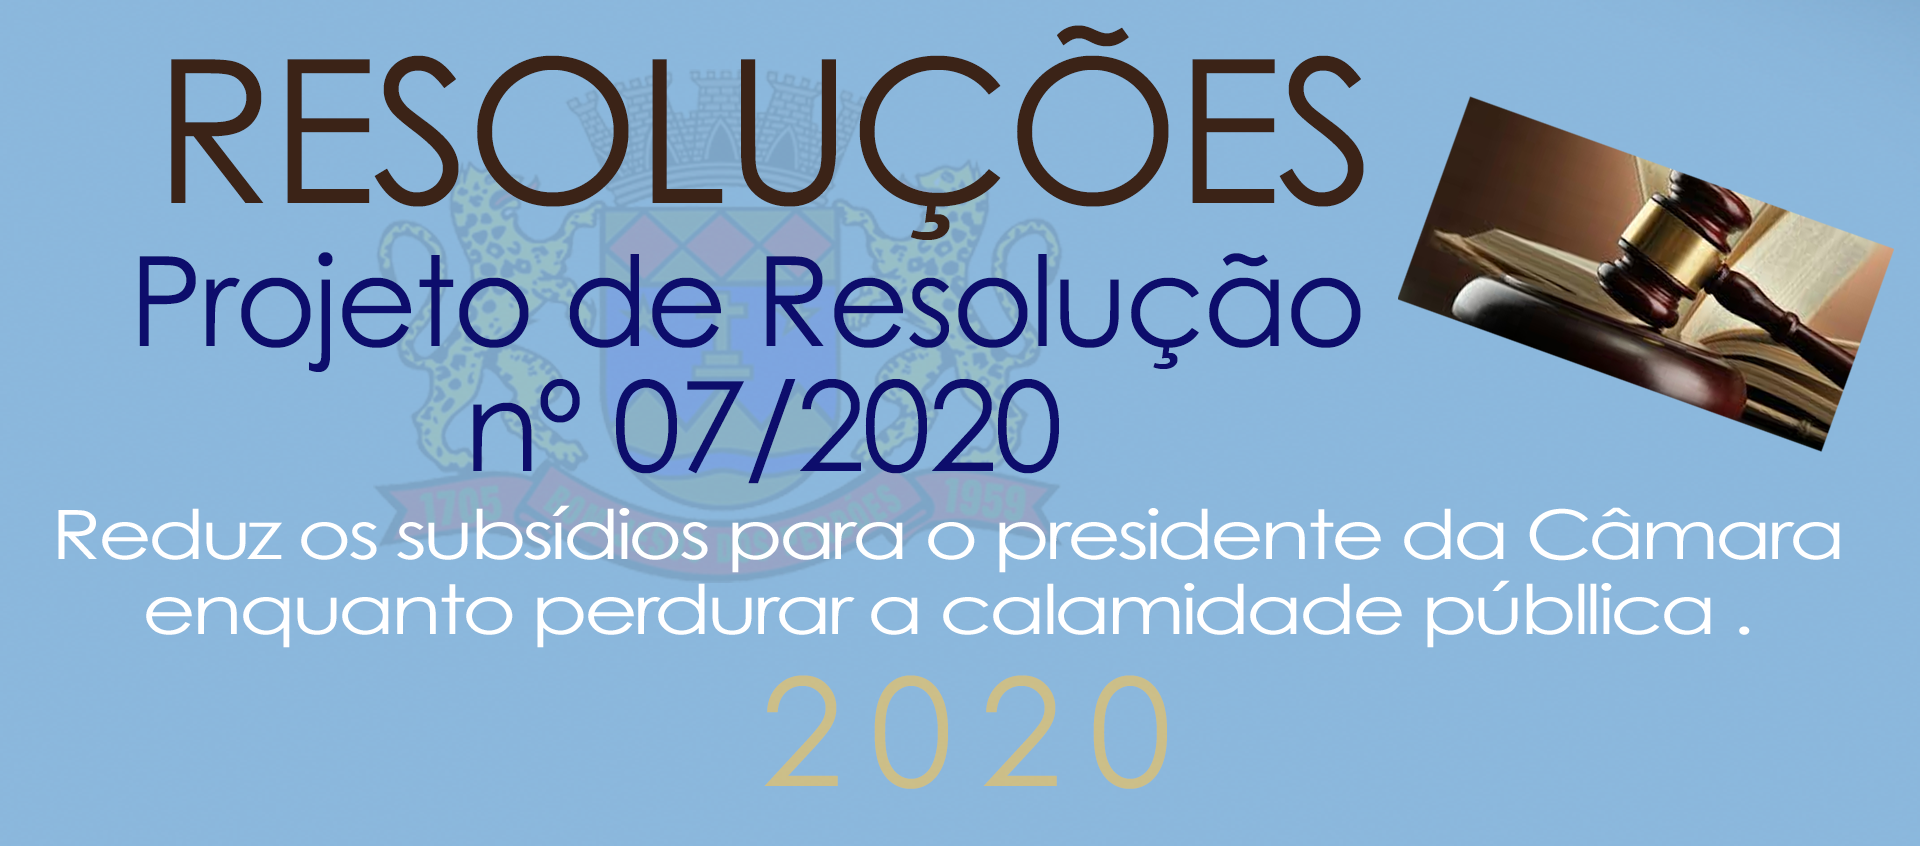 PR nº 07/2020 